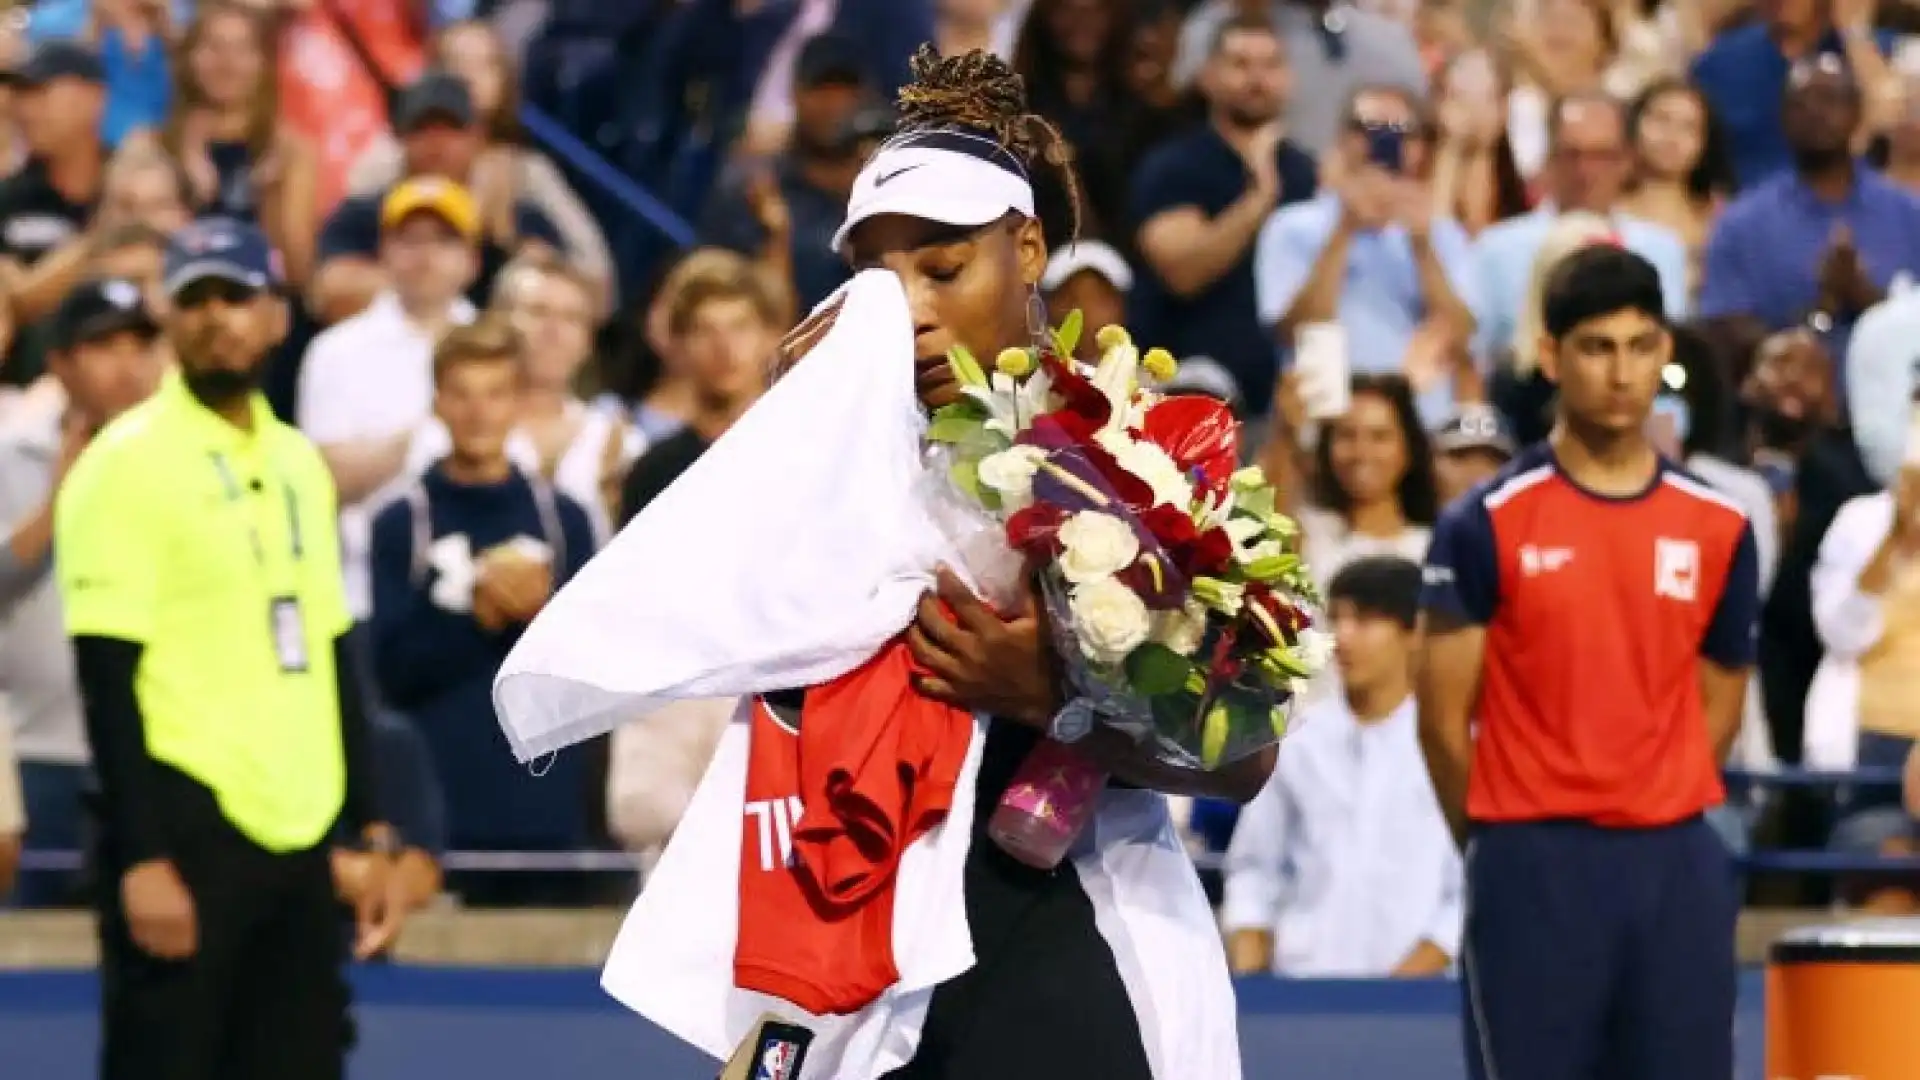 Nella notte Serena Williams ha disputato e perso la prima partita dopo l'annuncio del suo ritiro.